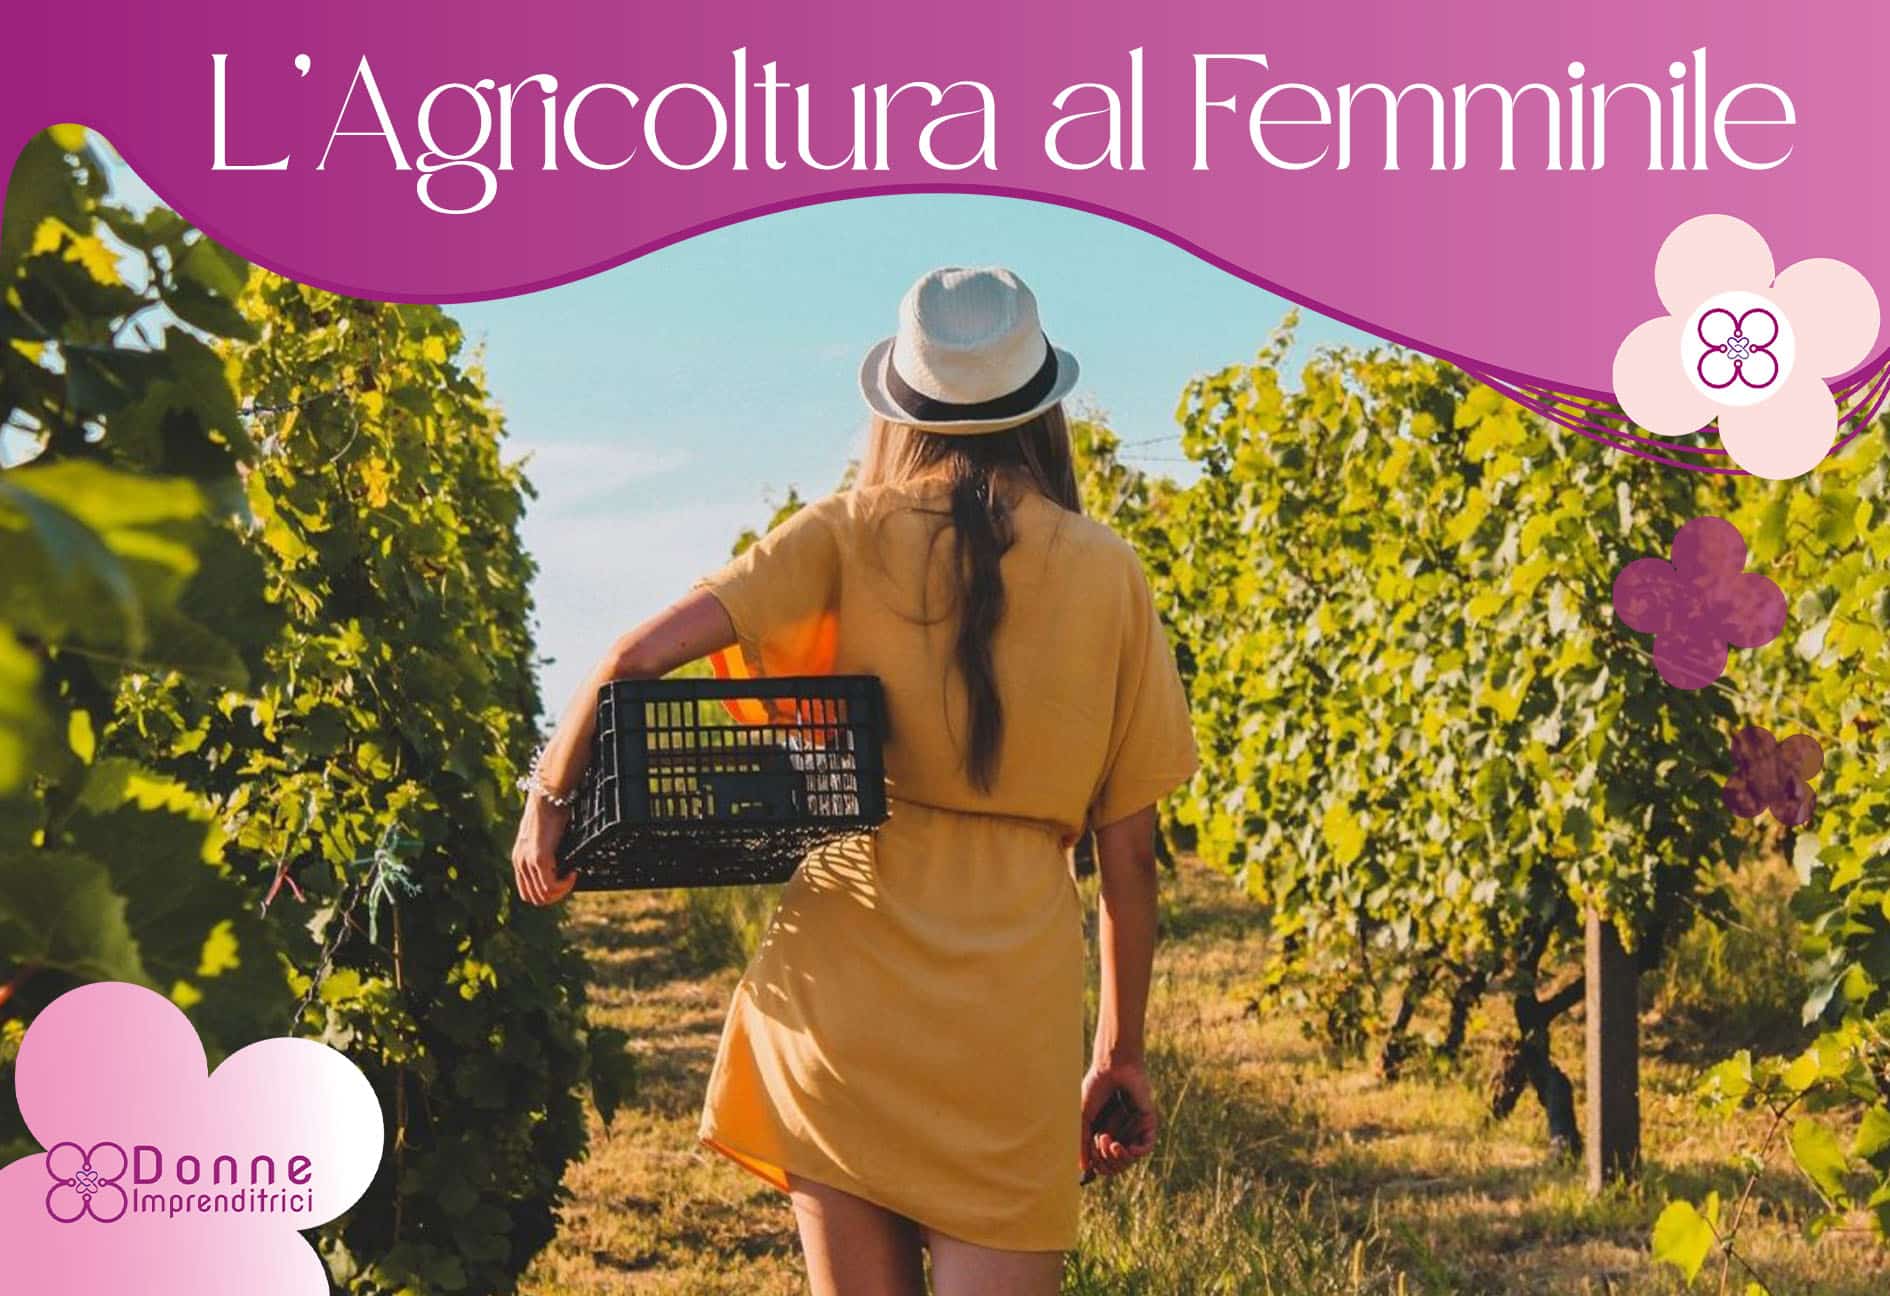 L'Italia è leader in Europa per numero di donne imprenditrici agricole! ‍ Più di 1 azienda agricola su 3 è guidata da una donna.